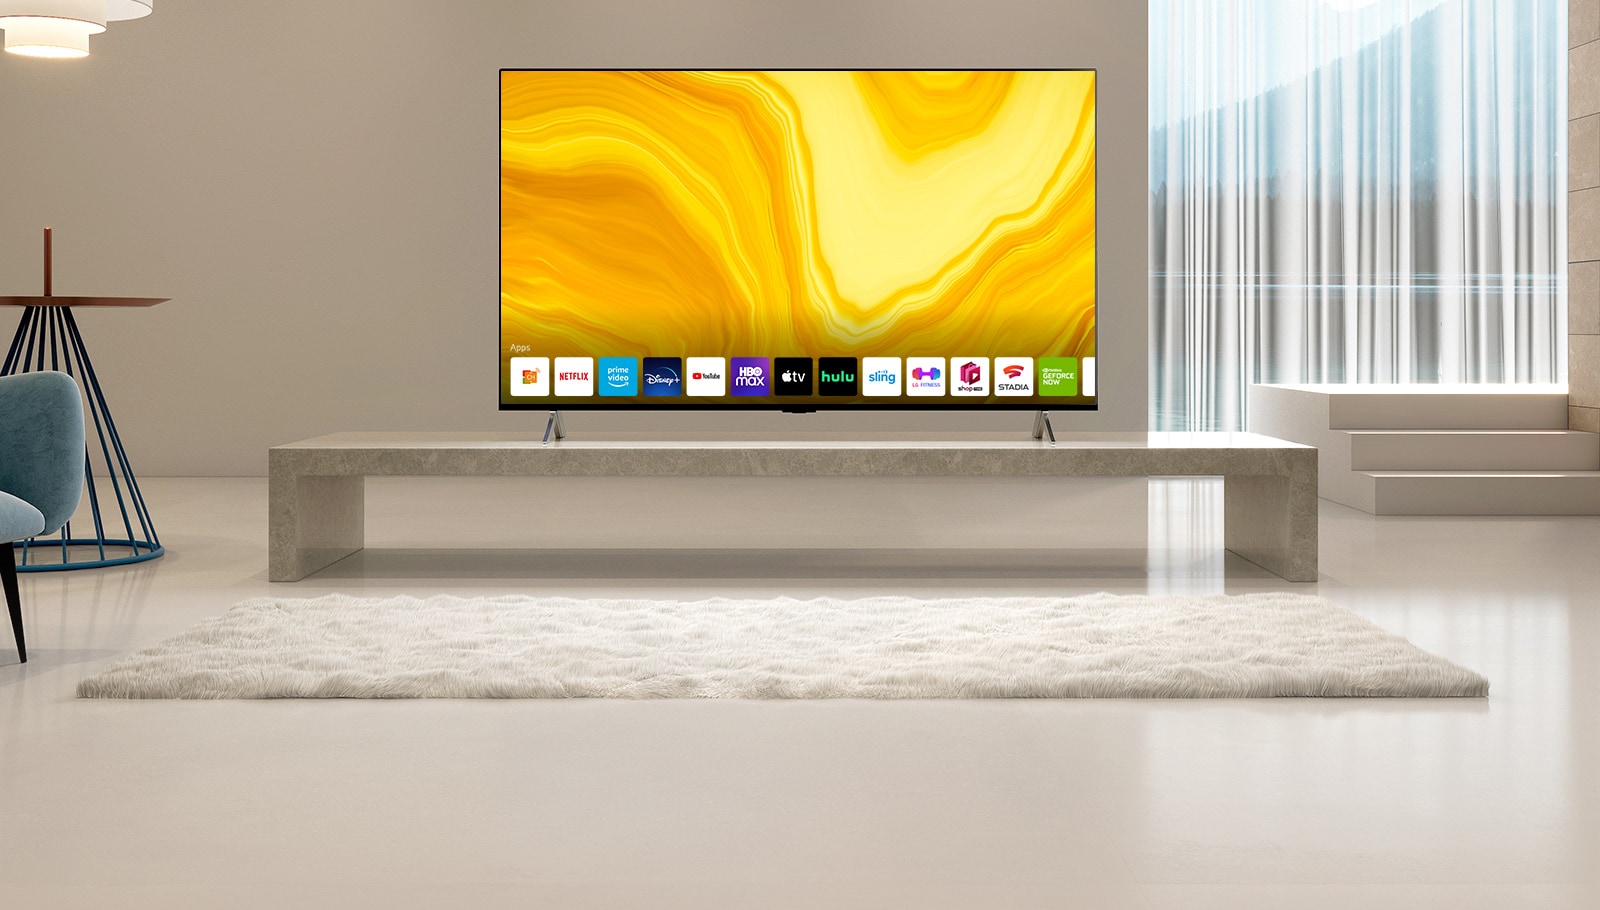 Pokazano listę graficznych interfejsów użytkownika przewijanego w dół ekranu głównego telewizora LG QNED. Scena zmienia się i pojawia się telewizor w żółtym pokoju dziennym.